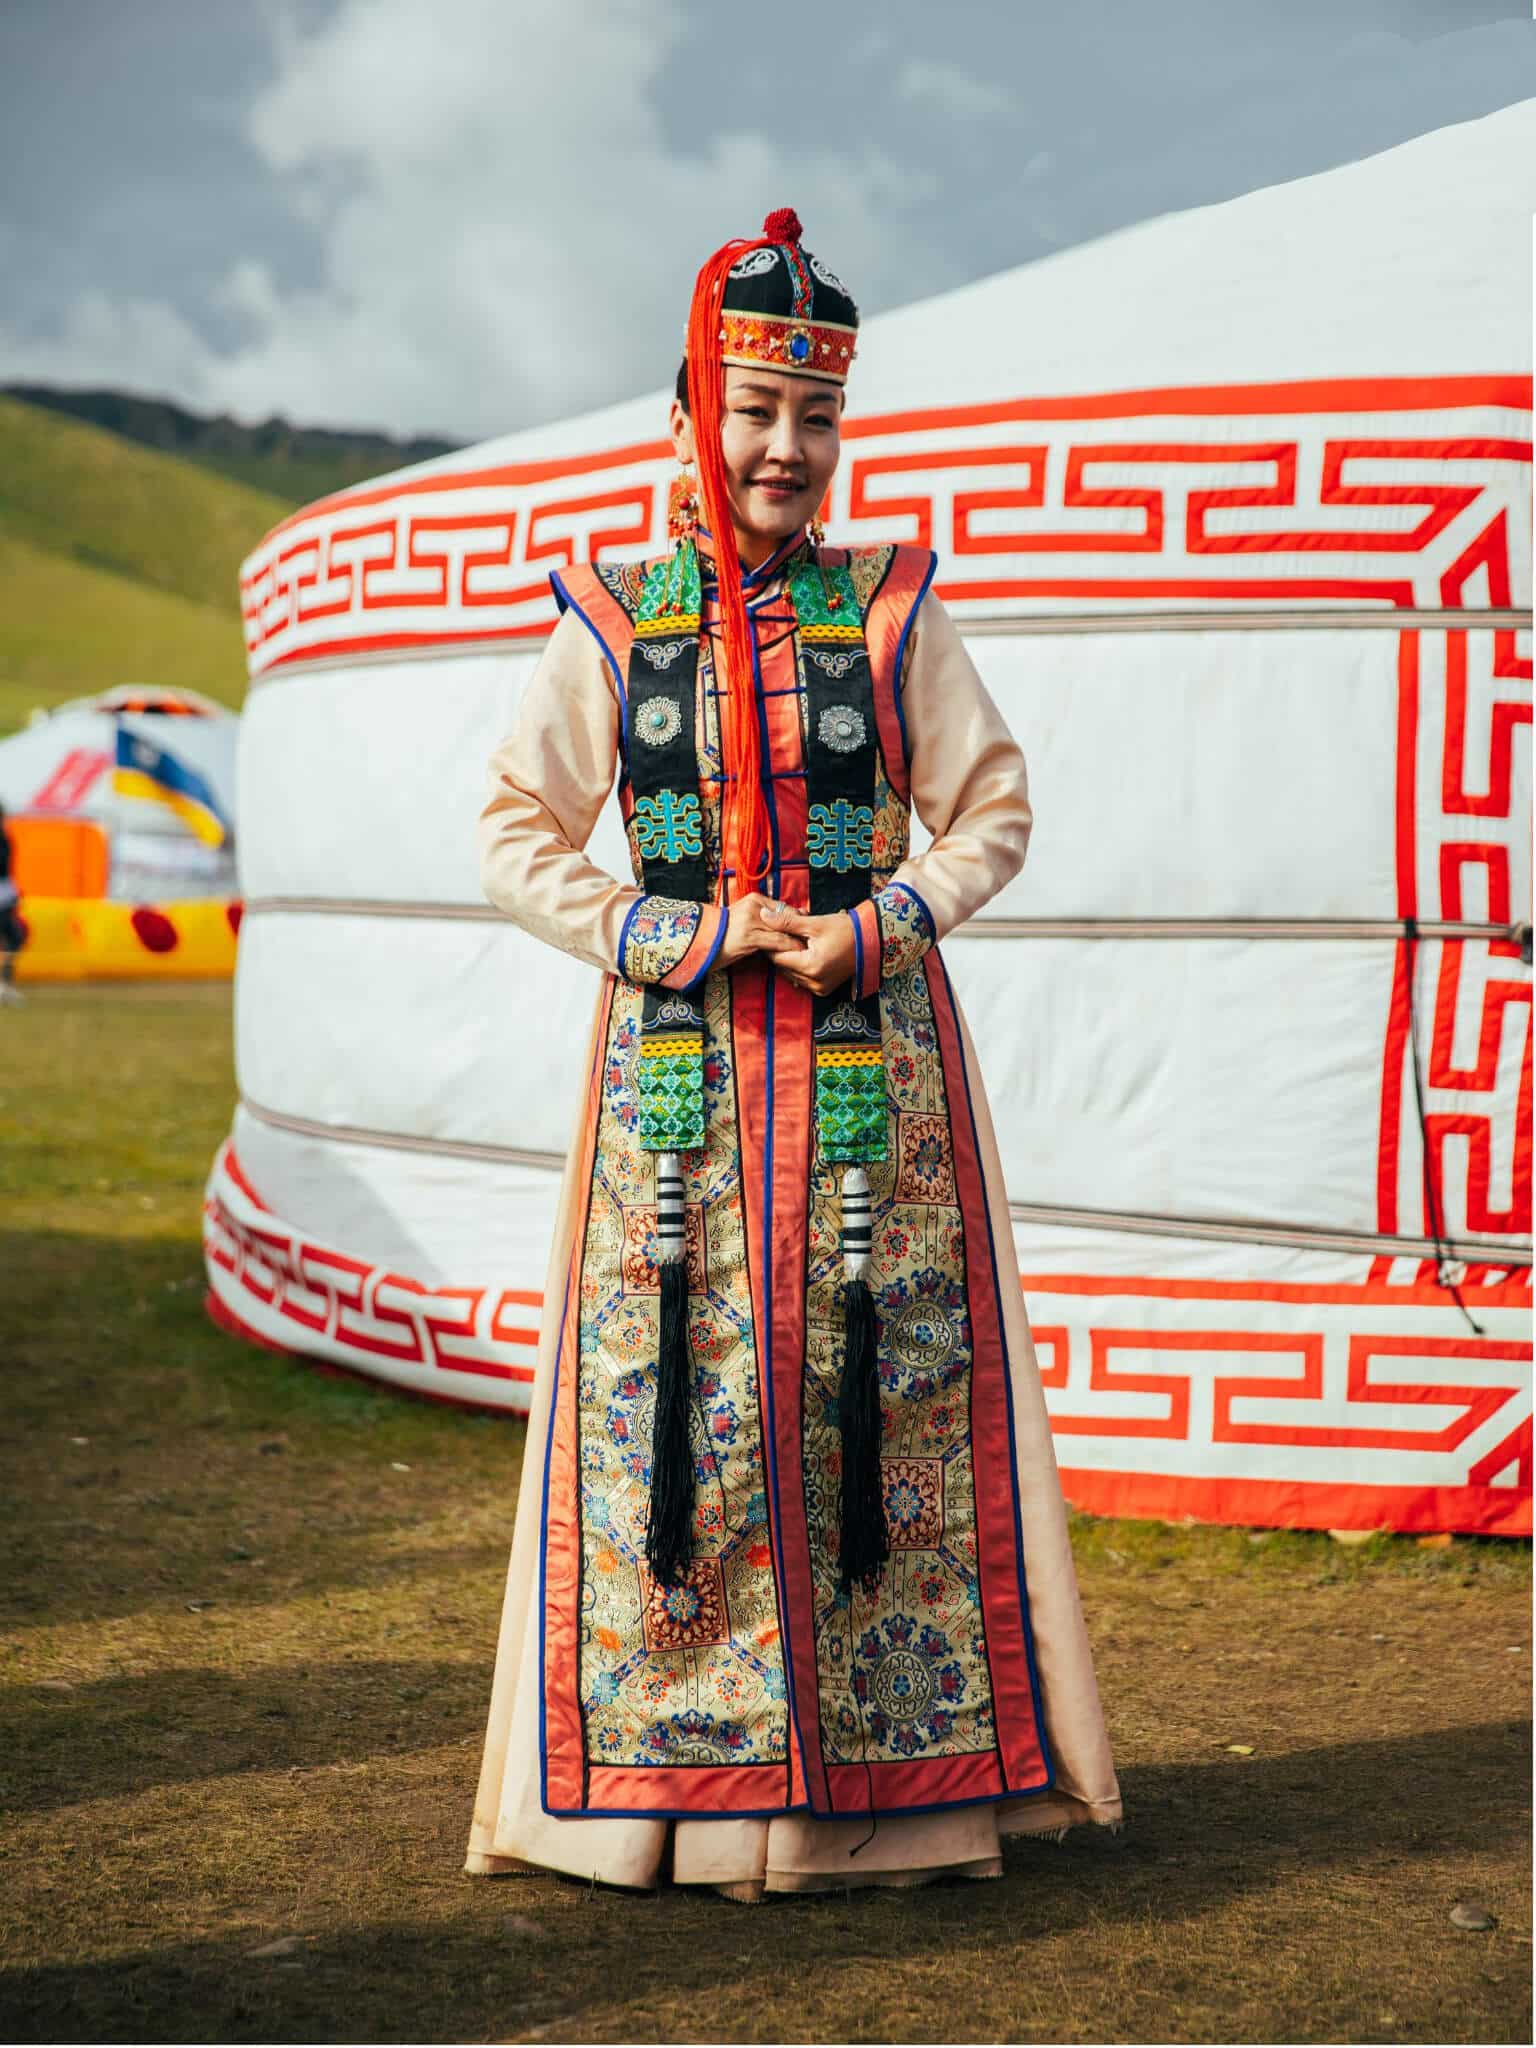 Mongolian deel worn by woman